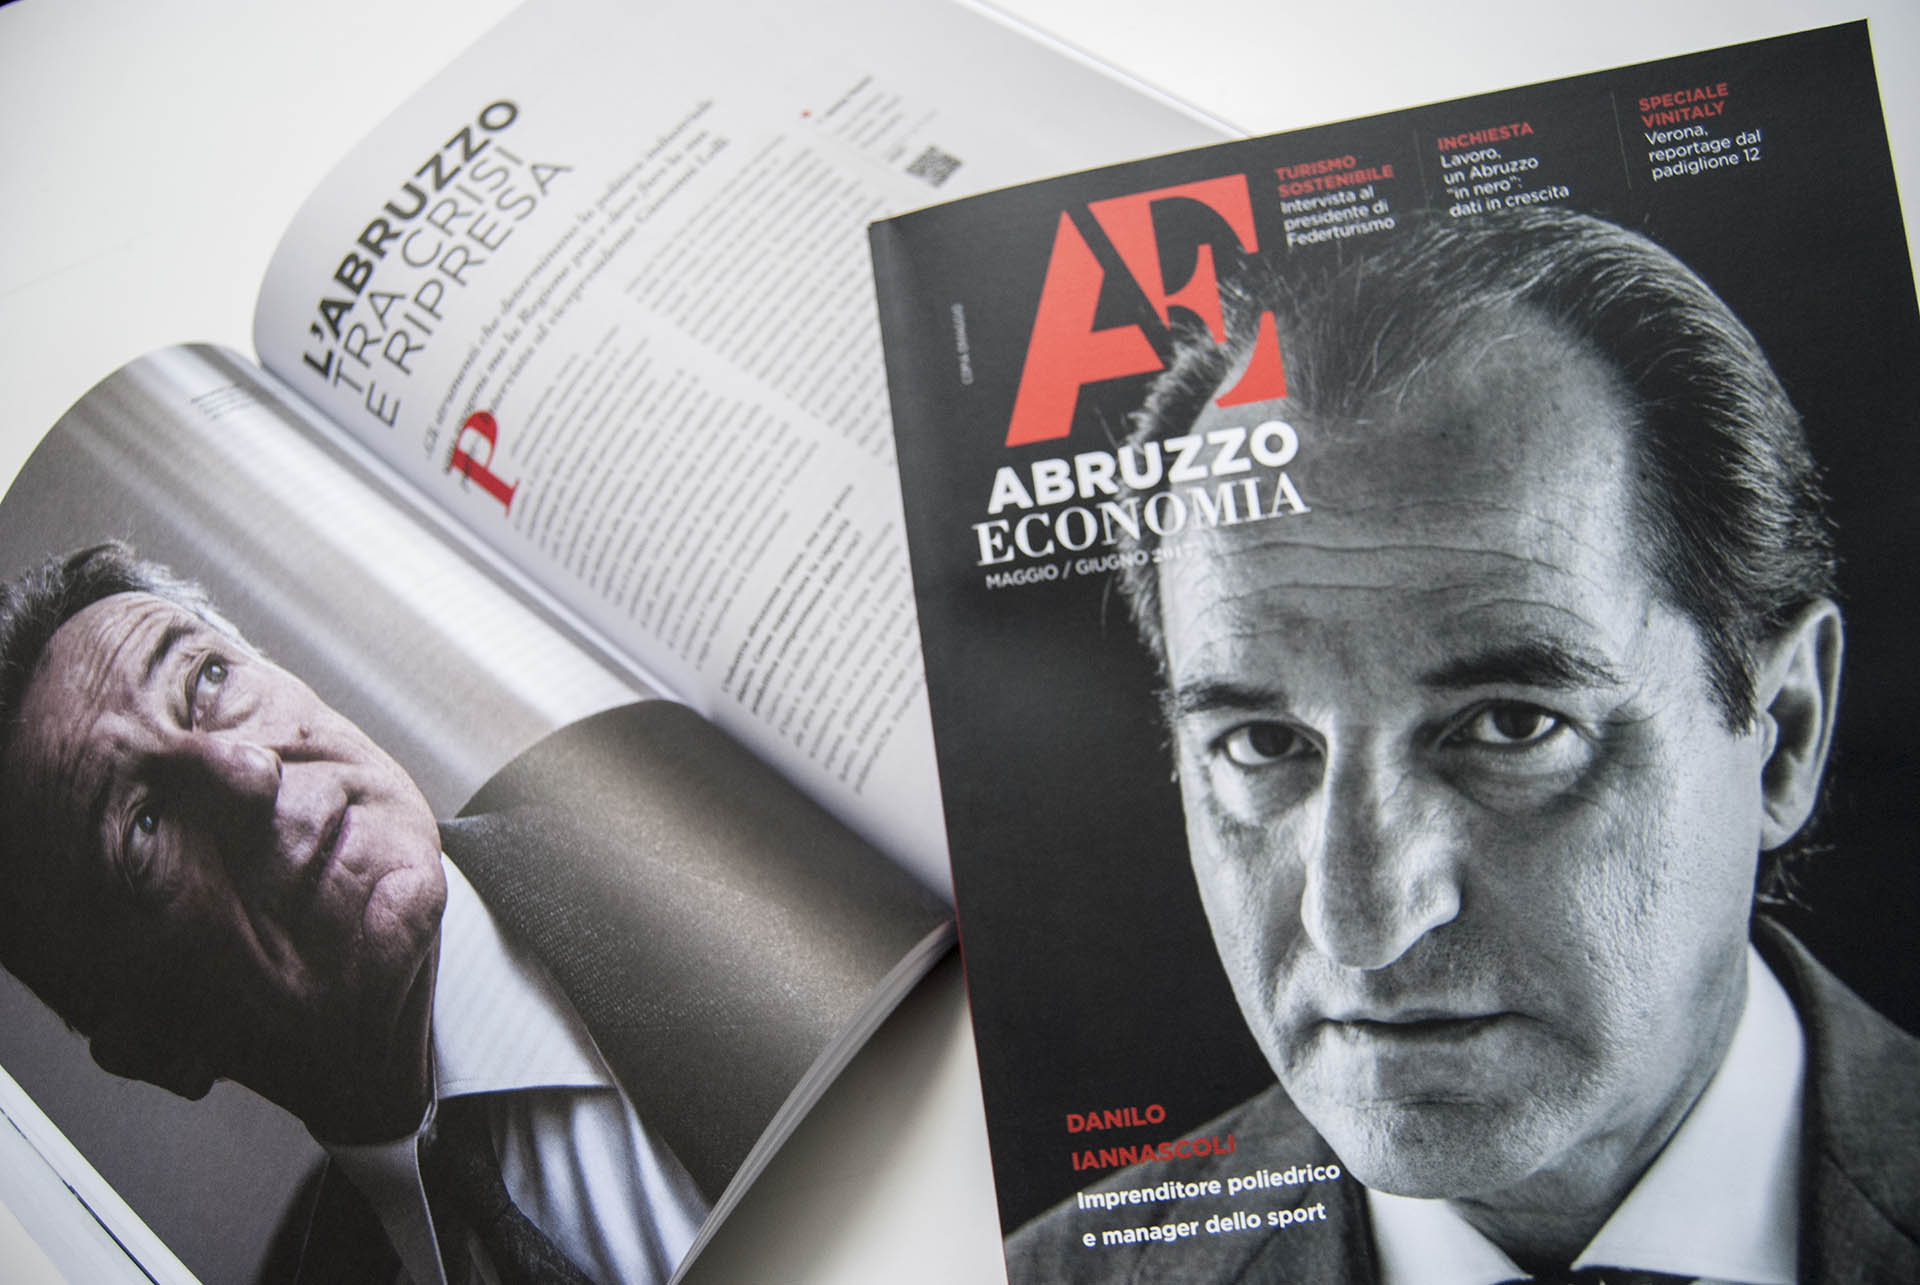 Abruzzo Economia, Magazine